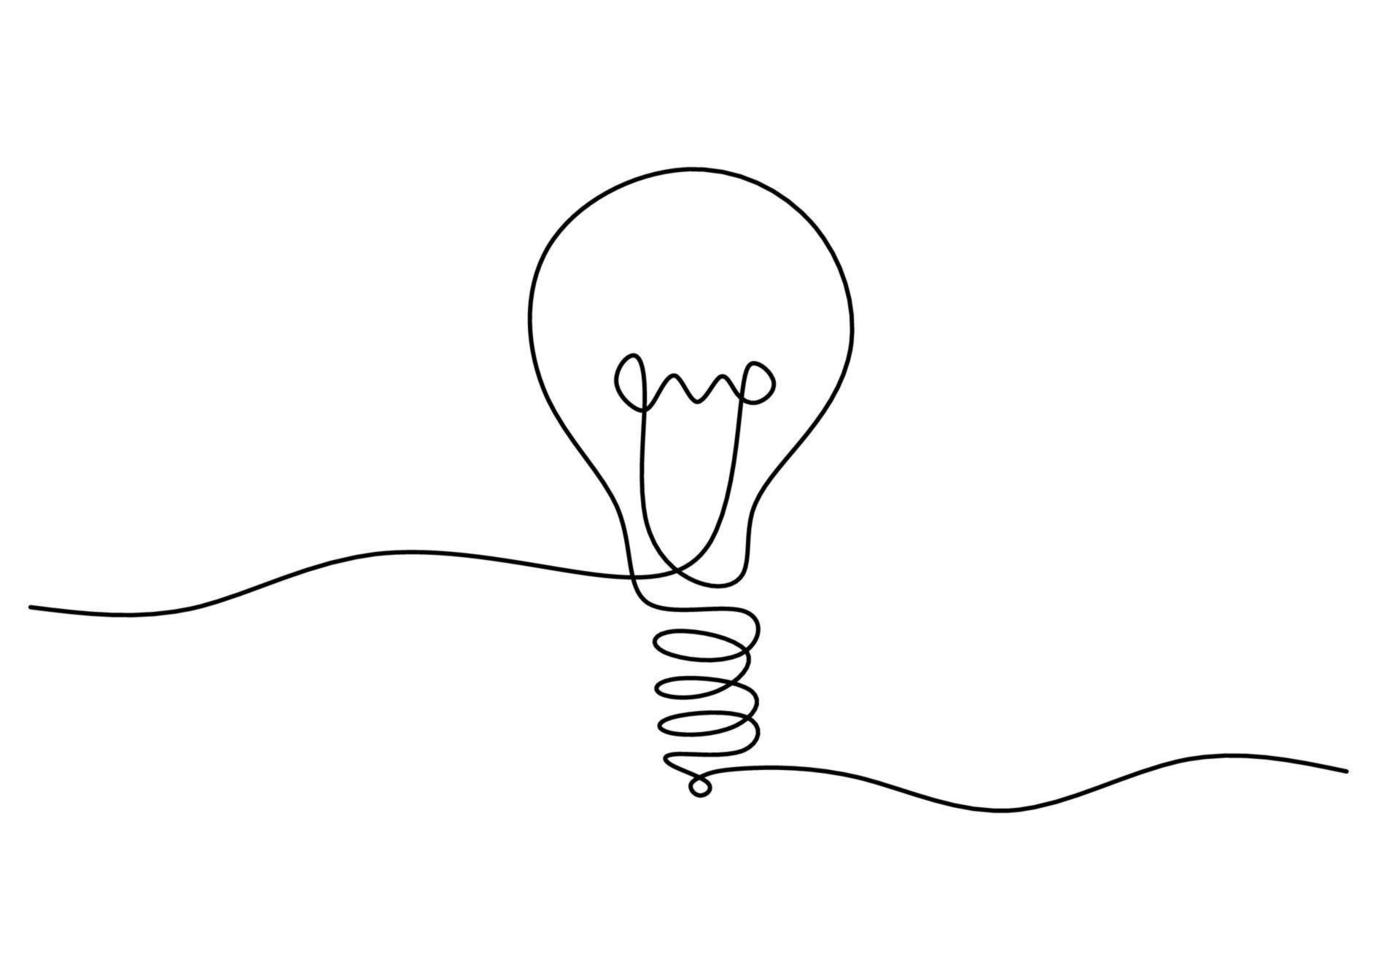 eine durchgehende einzelne Lampenlinie als Ideensymbol vektor